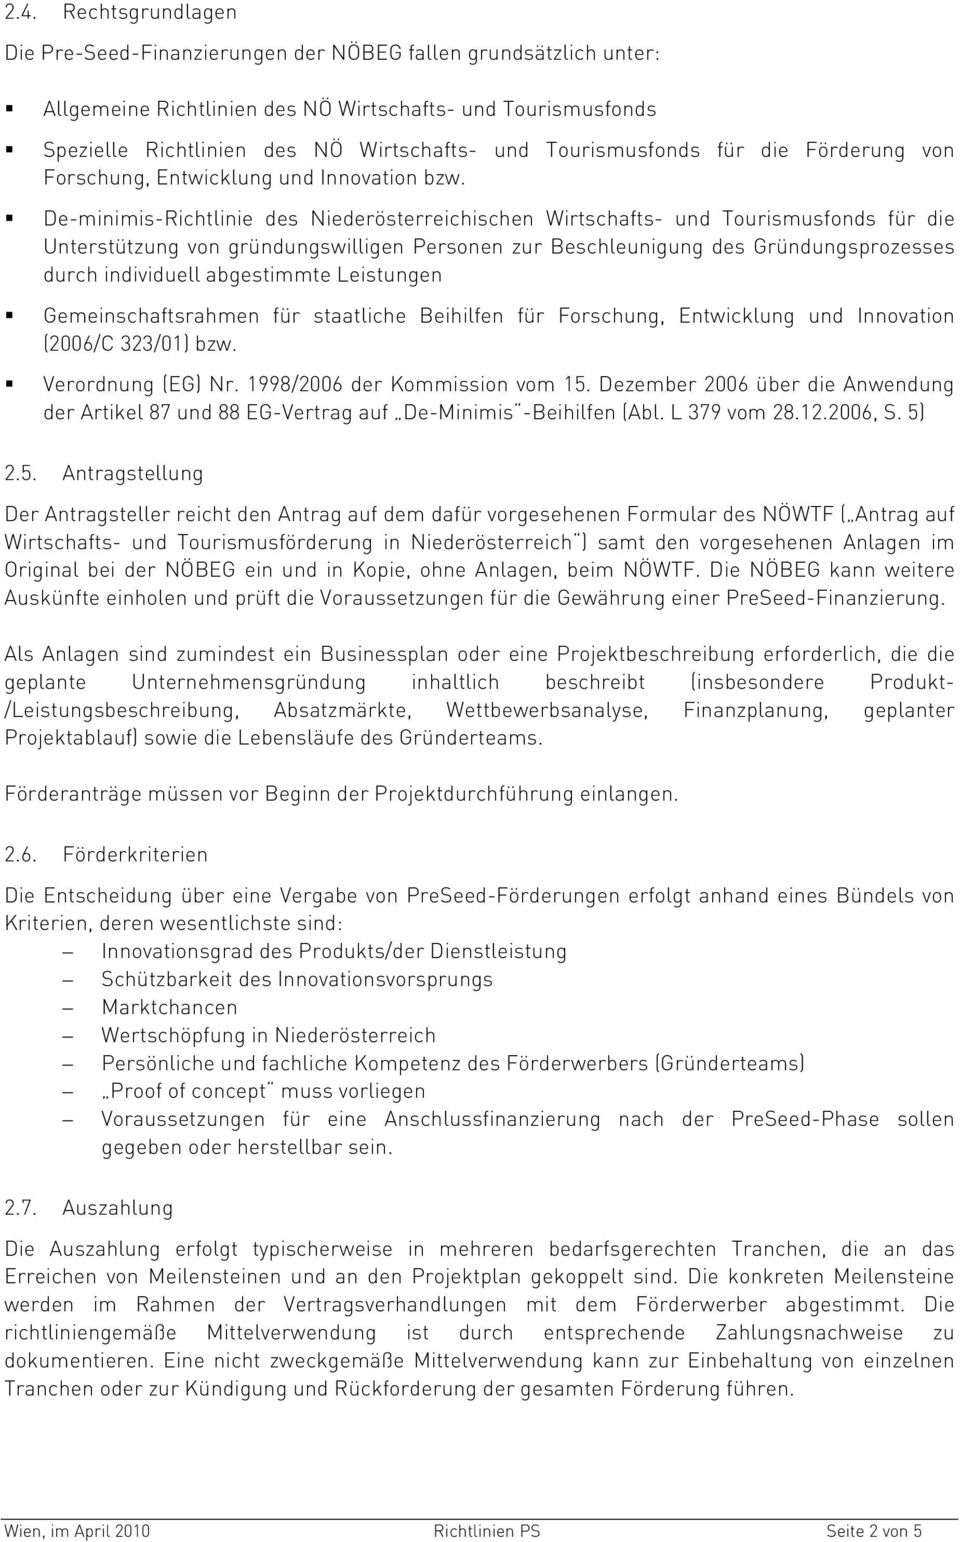 De-minimis-Richtlinie des Niederösterreichischen Wirtschafts- und Tourismusfonds für die Unterstützung von gründungswilligen Personen zur Beschleunigung des Gründungsprozesses durch individuell